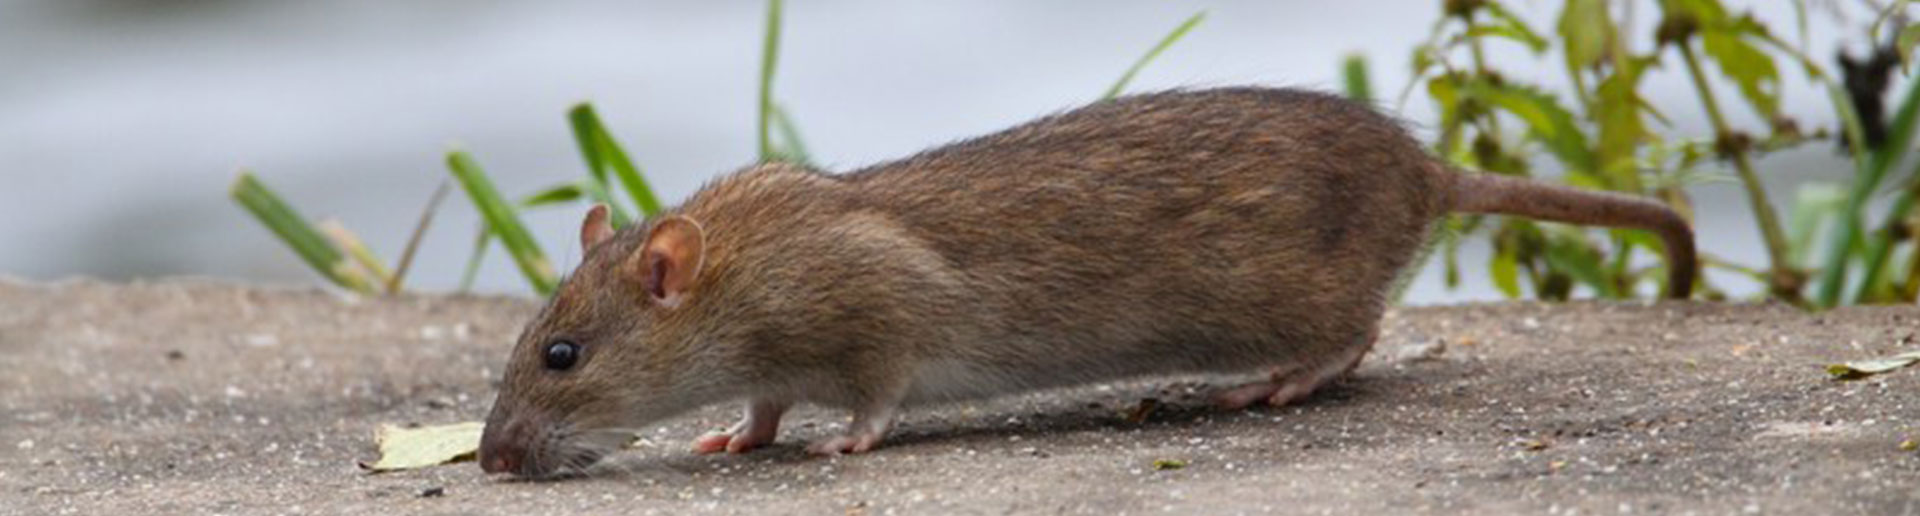 Ratten Im Garten Vertreiben Frisch Kammerjäger Ratgeber Infos Zu Schädlingen